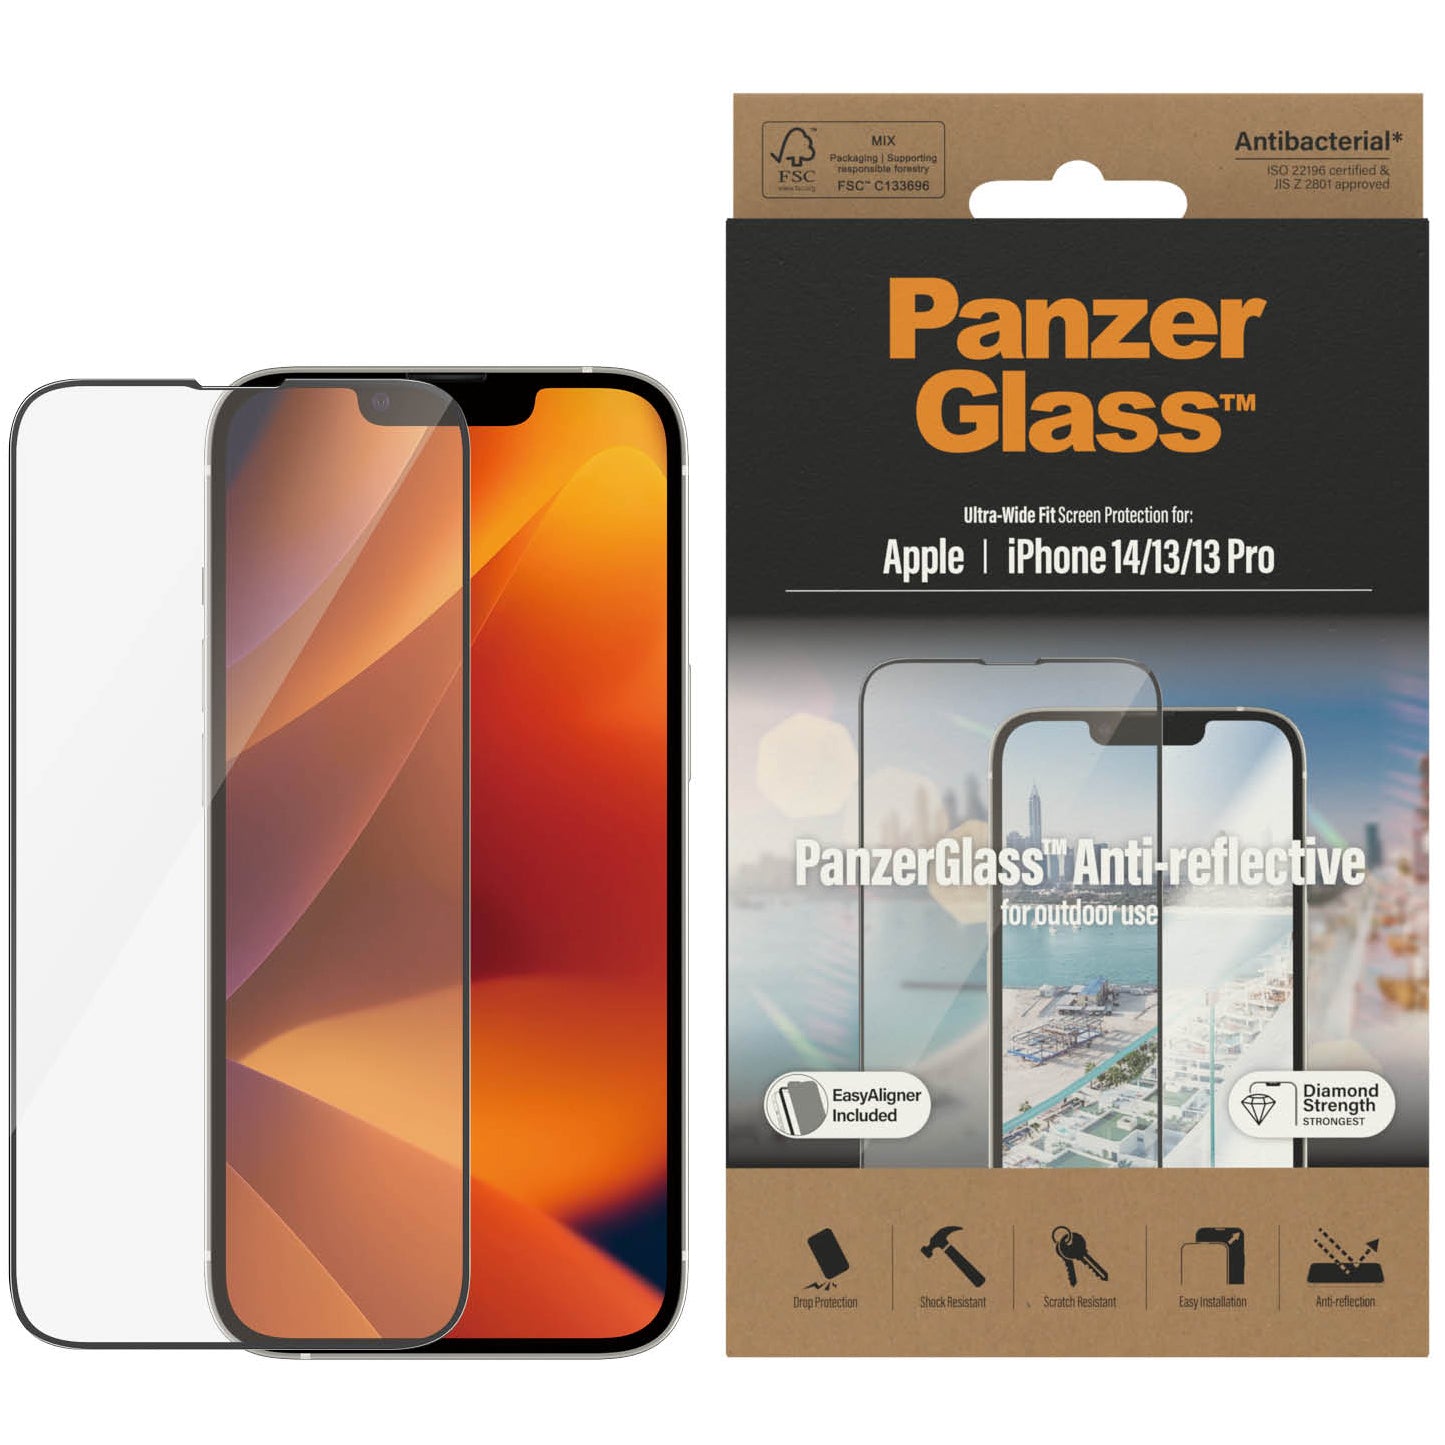 Gehärtetes Glas für das gesamte Display PanzerGlass Ultra-Wide Fit Anti-reflective + EasyAligner für iPhone 14 / 13 Pro / 13, schwarzer Rahmen